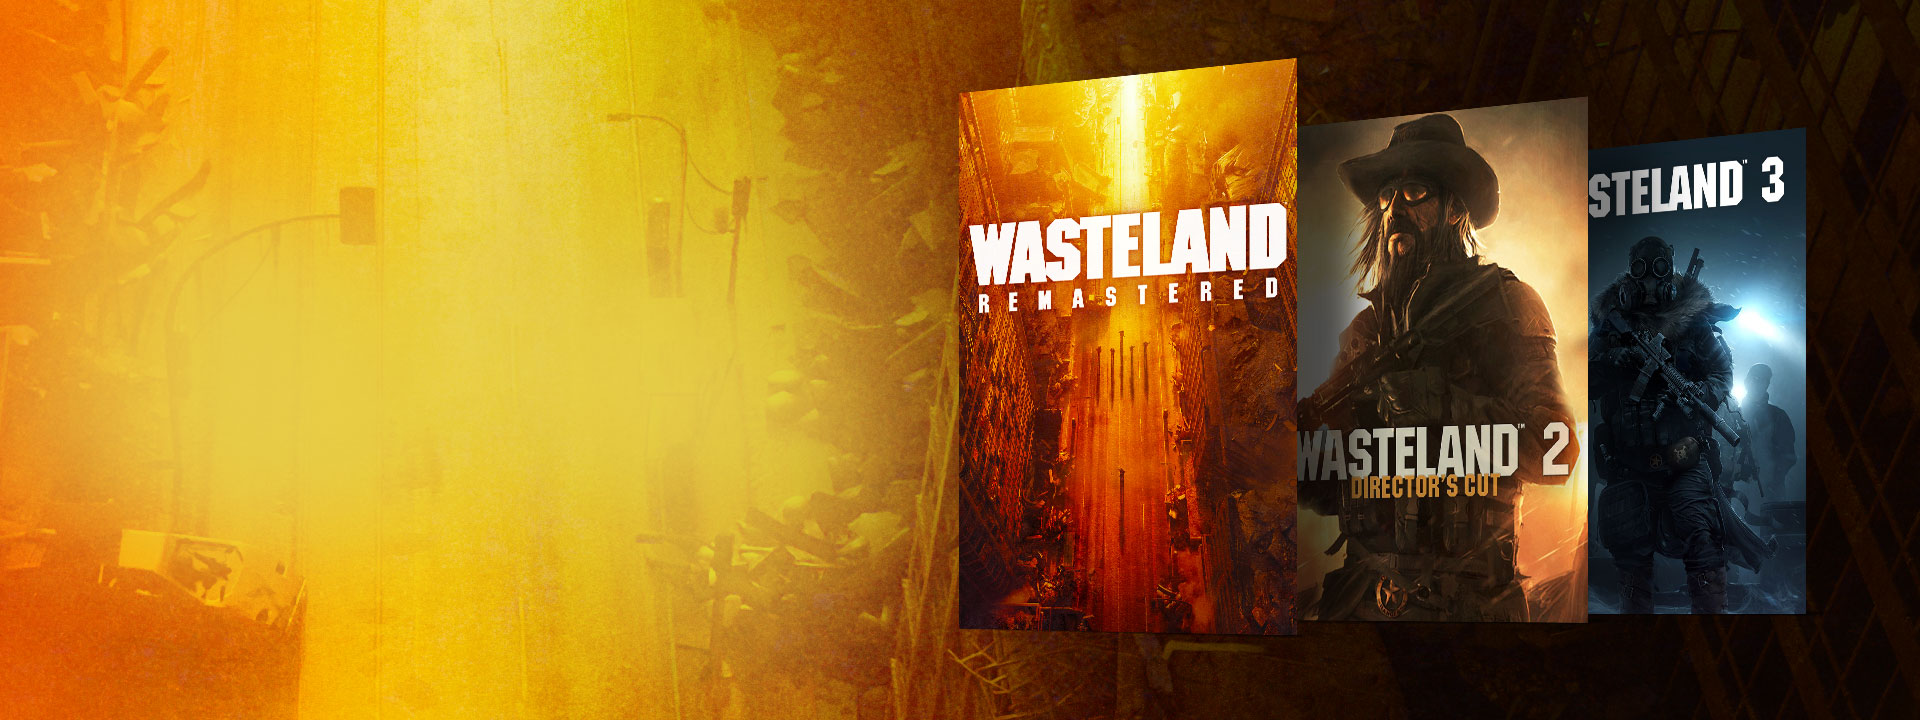 Wasteland Remastered, Wasteland 2 Director's Cut ve Wasteland 3'ün kutu resimleri. Sarı ve turuncu tonlarda terk edilmiş bir sokak arka planı